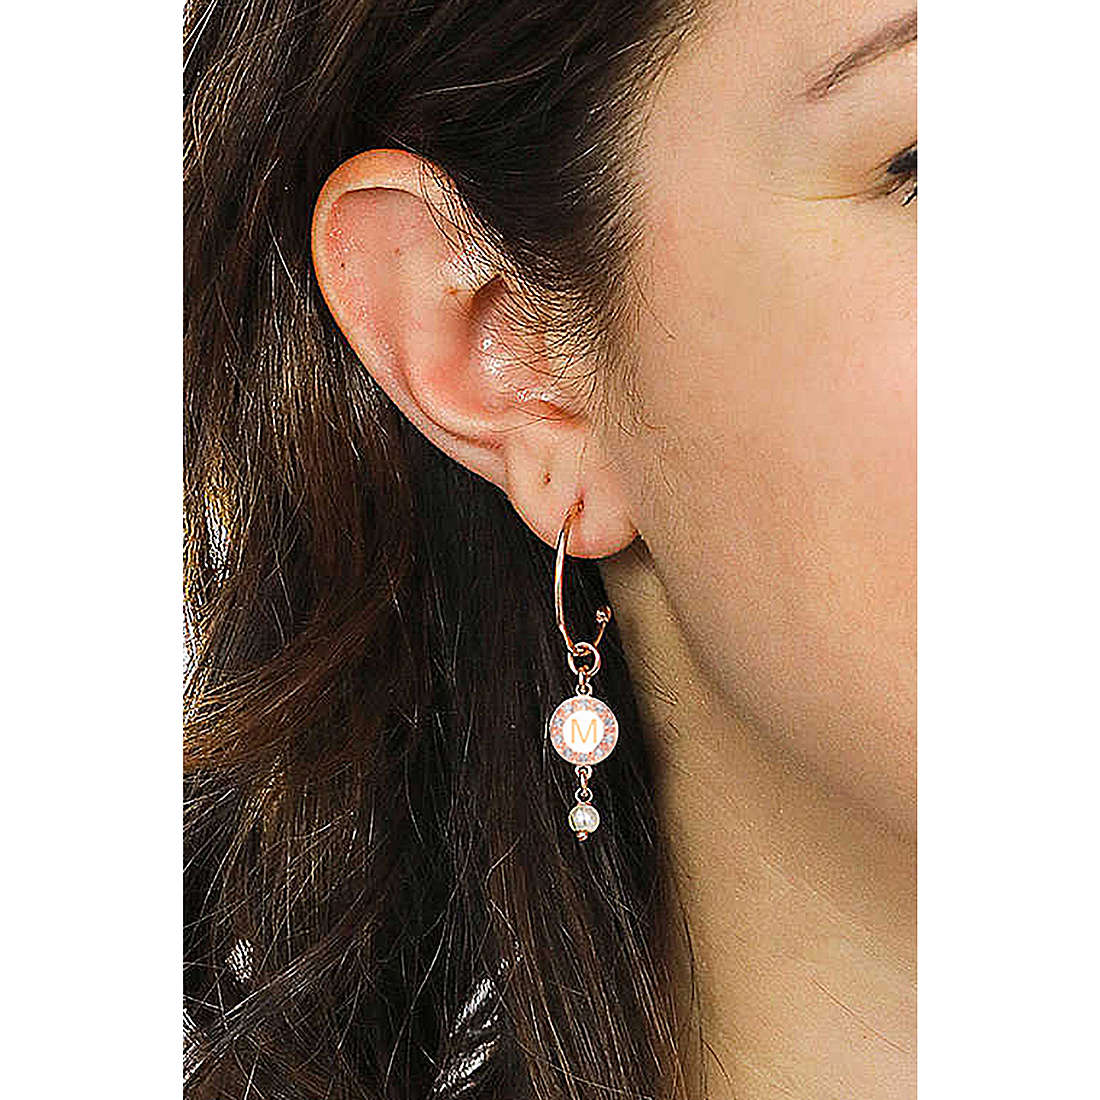 Dvccio earrings Kelly woman OTRESAGR-m wearing